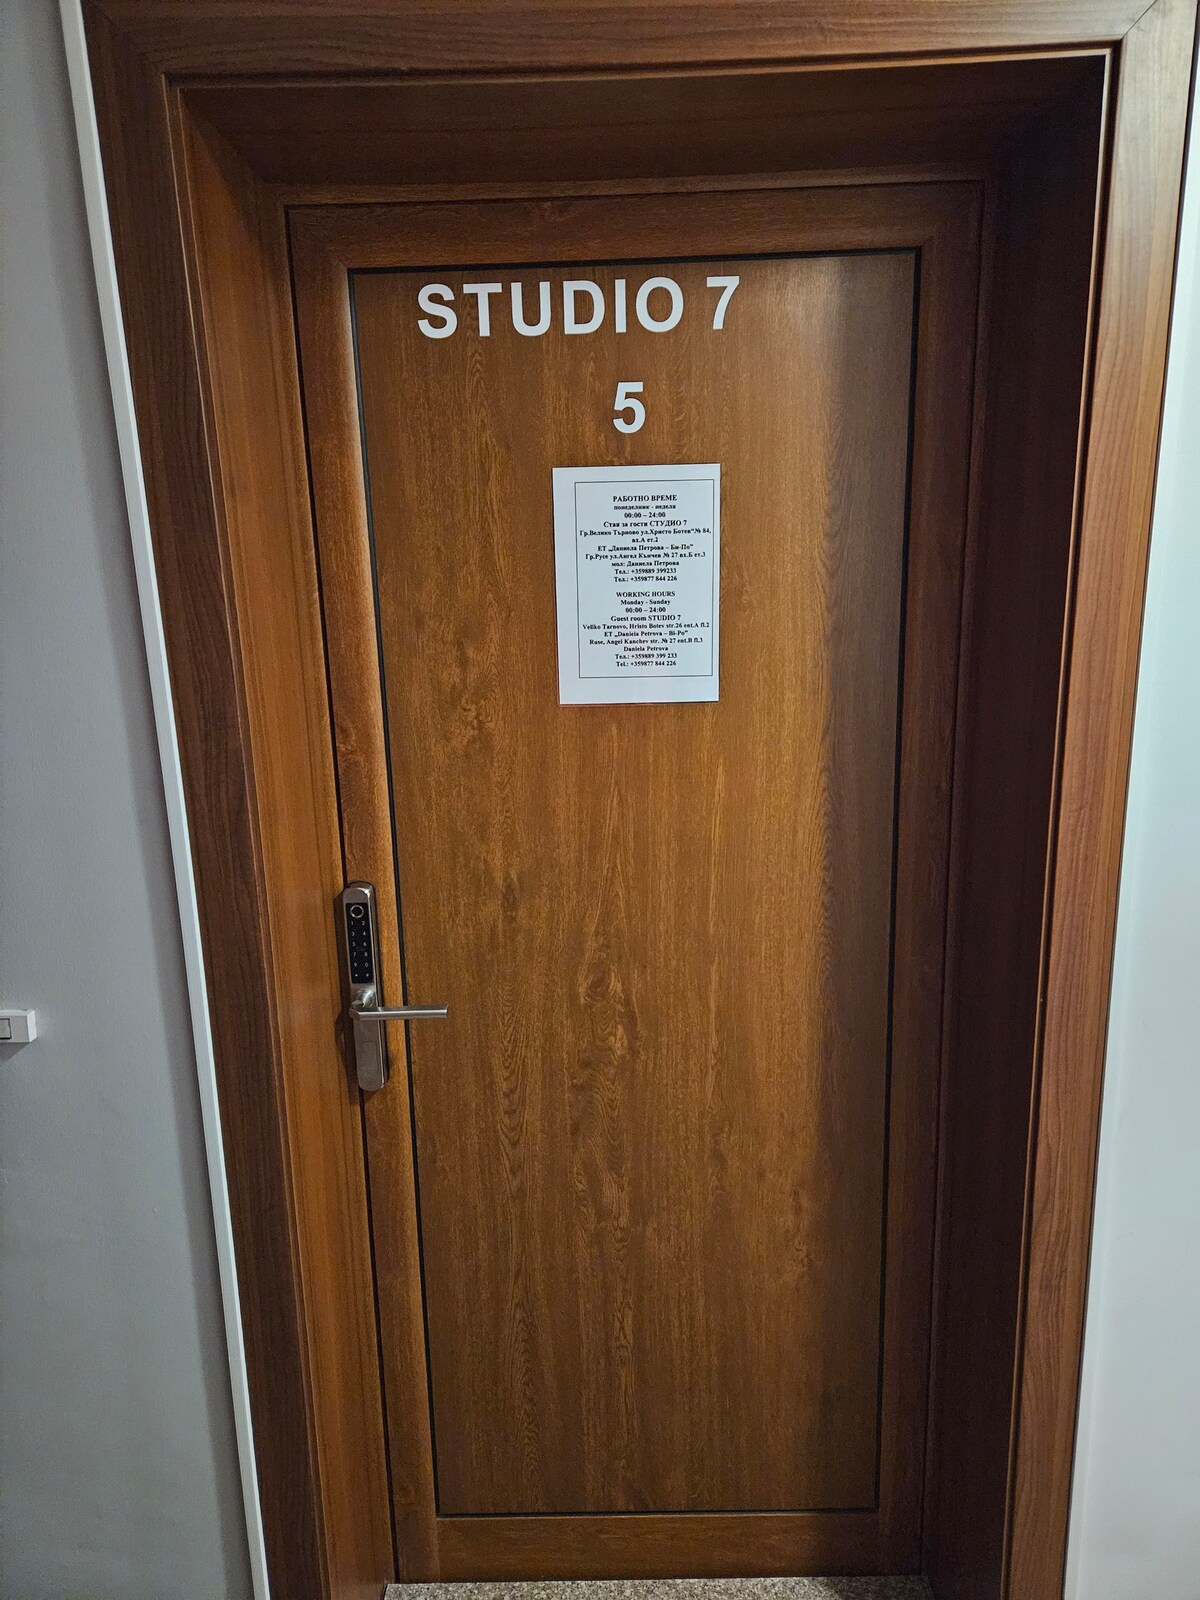 Studio 7 - 5